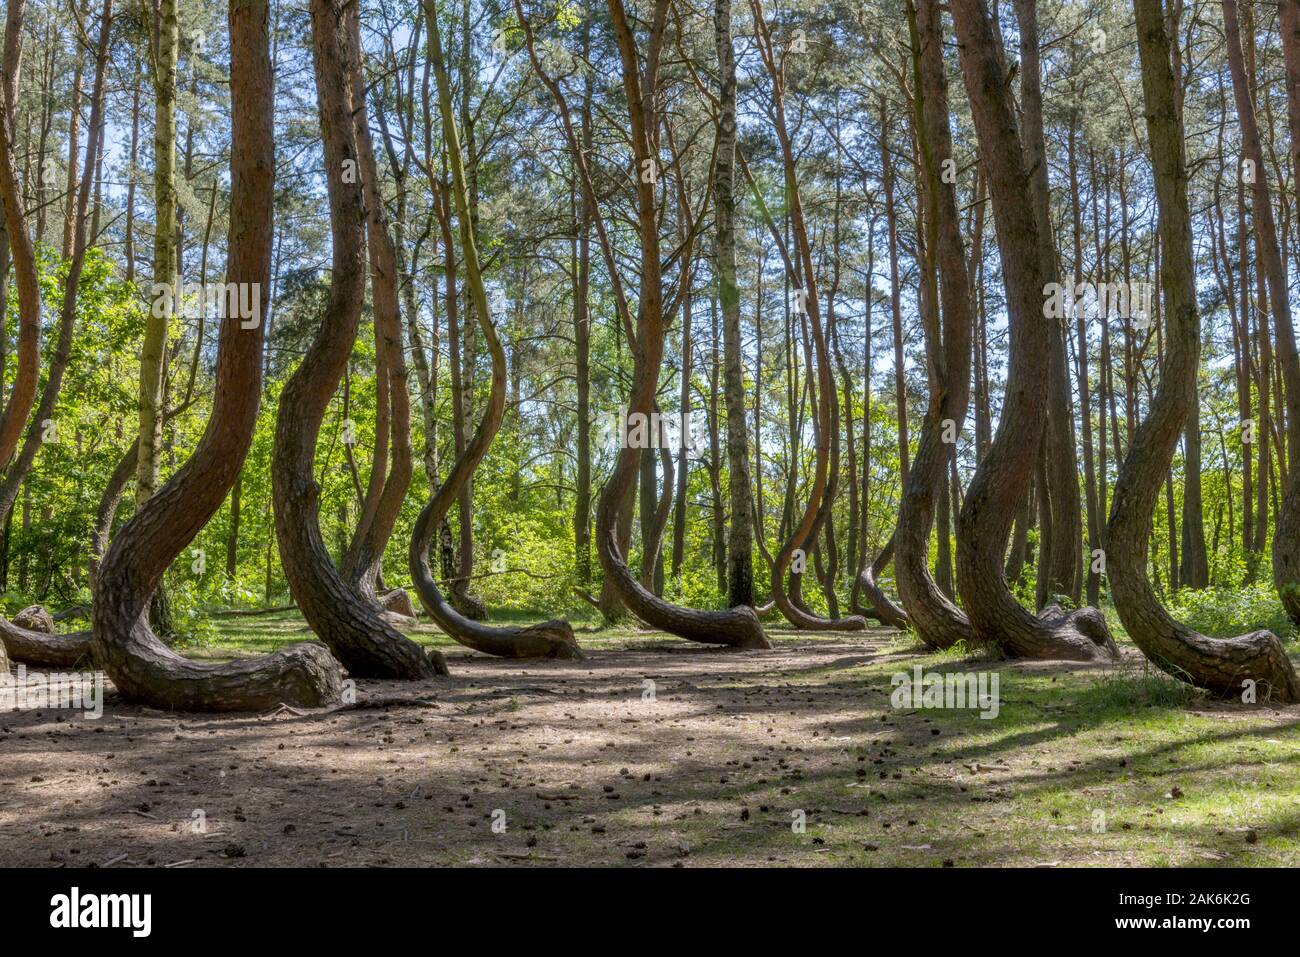 Gryfino (Greifenhagen): Krummer Wald, Staemme der rund 400 Kiefern sind wenige cm ueber dem Boden geknickt und wachsen dann in einem Bogen wieder in d Stock Photo